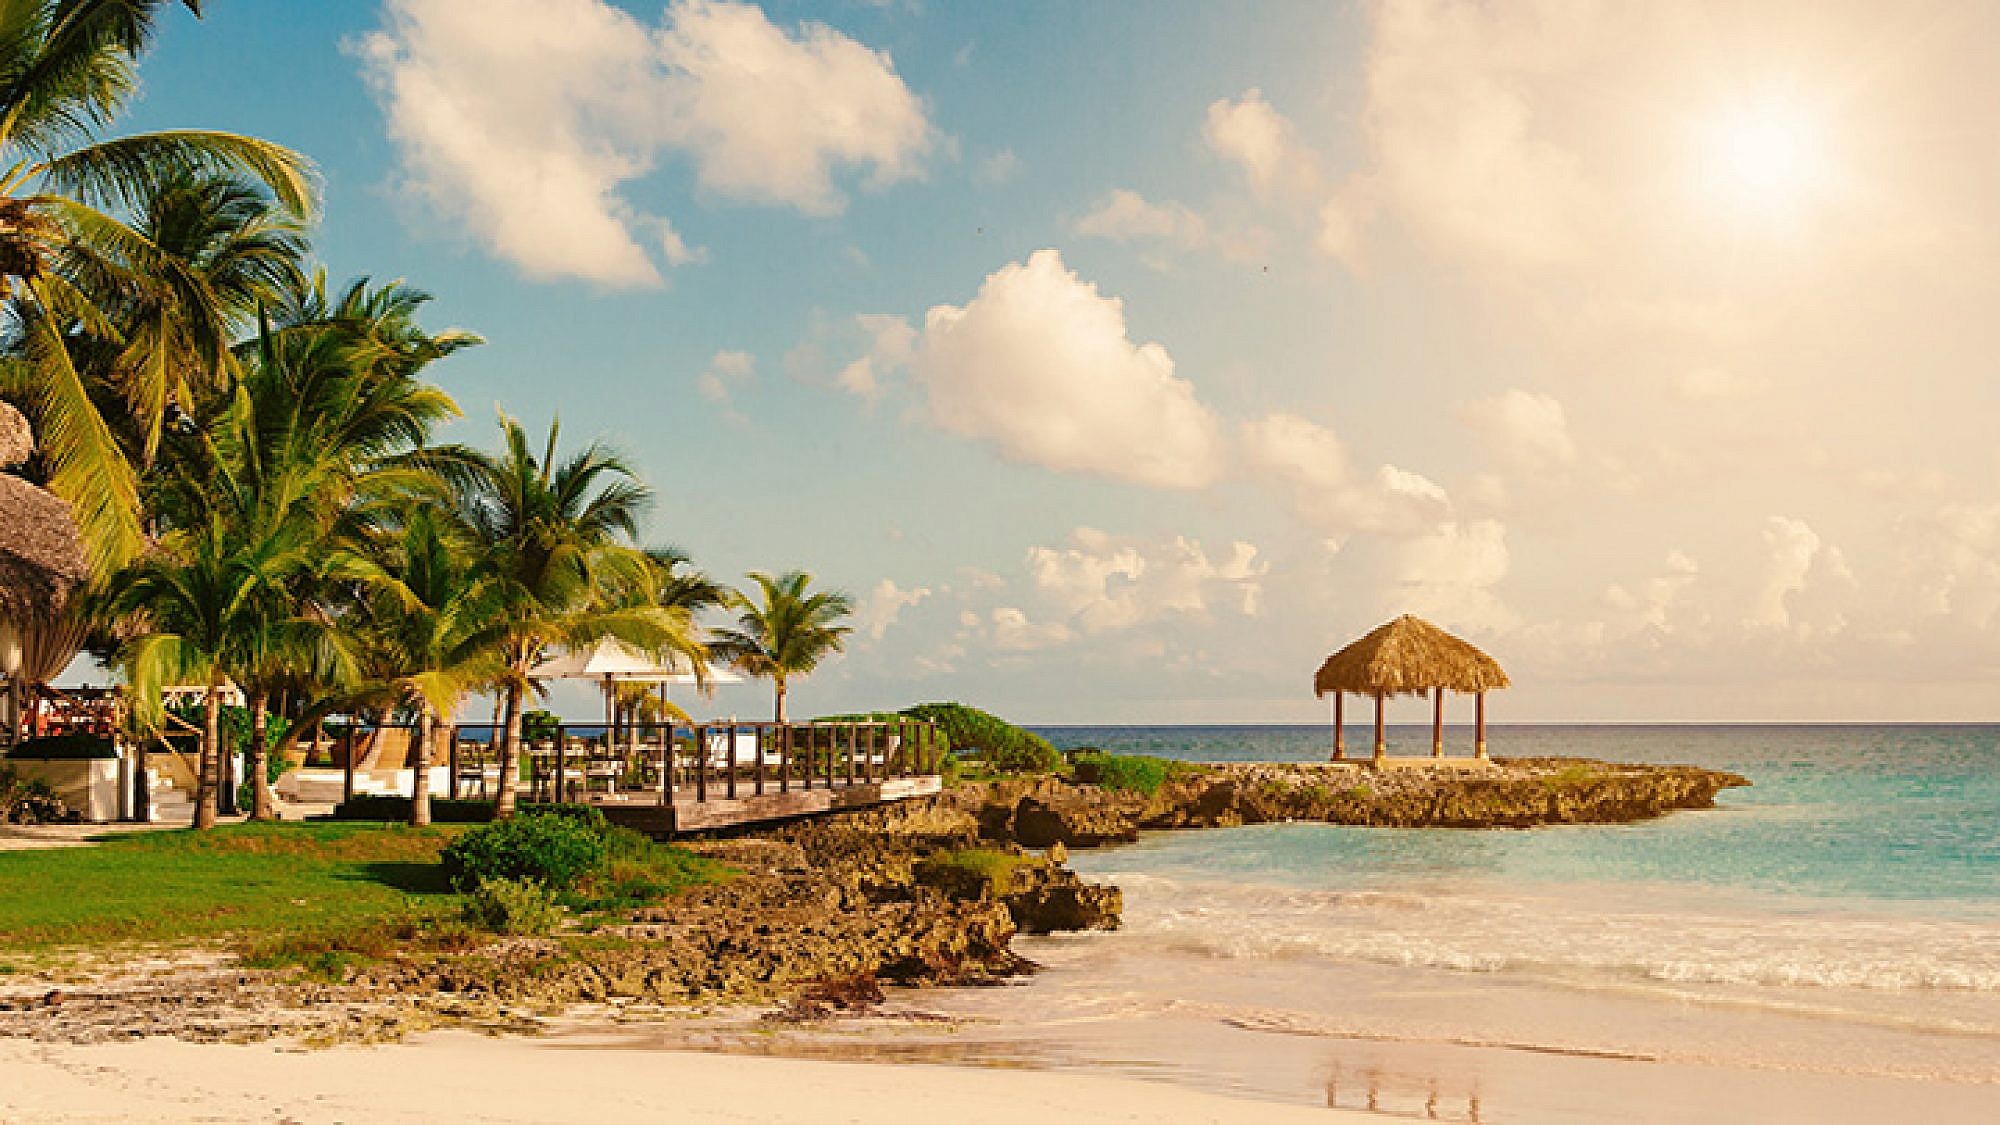 חופשה טרופית על החוף. הקפובליקה הדומיניקנית | צילום: Shutterstock